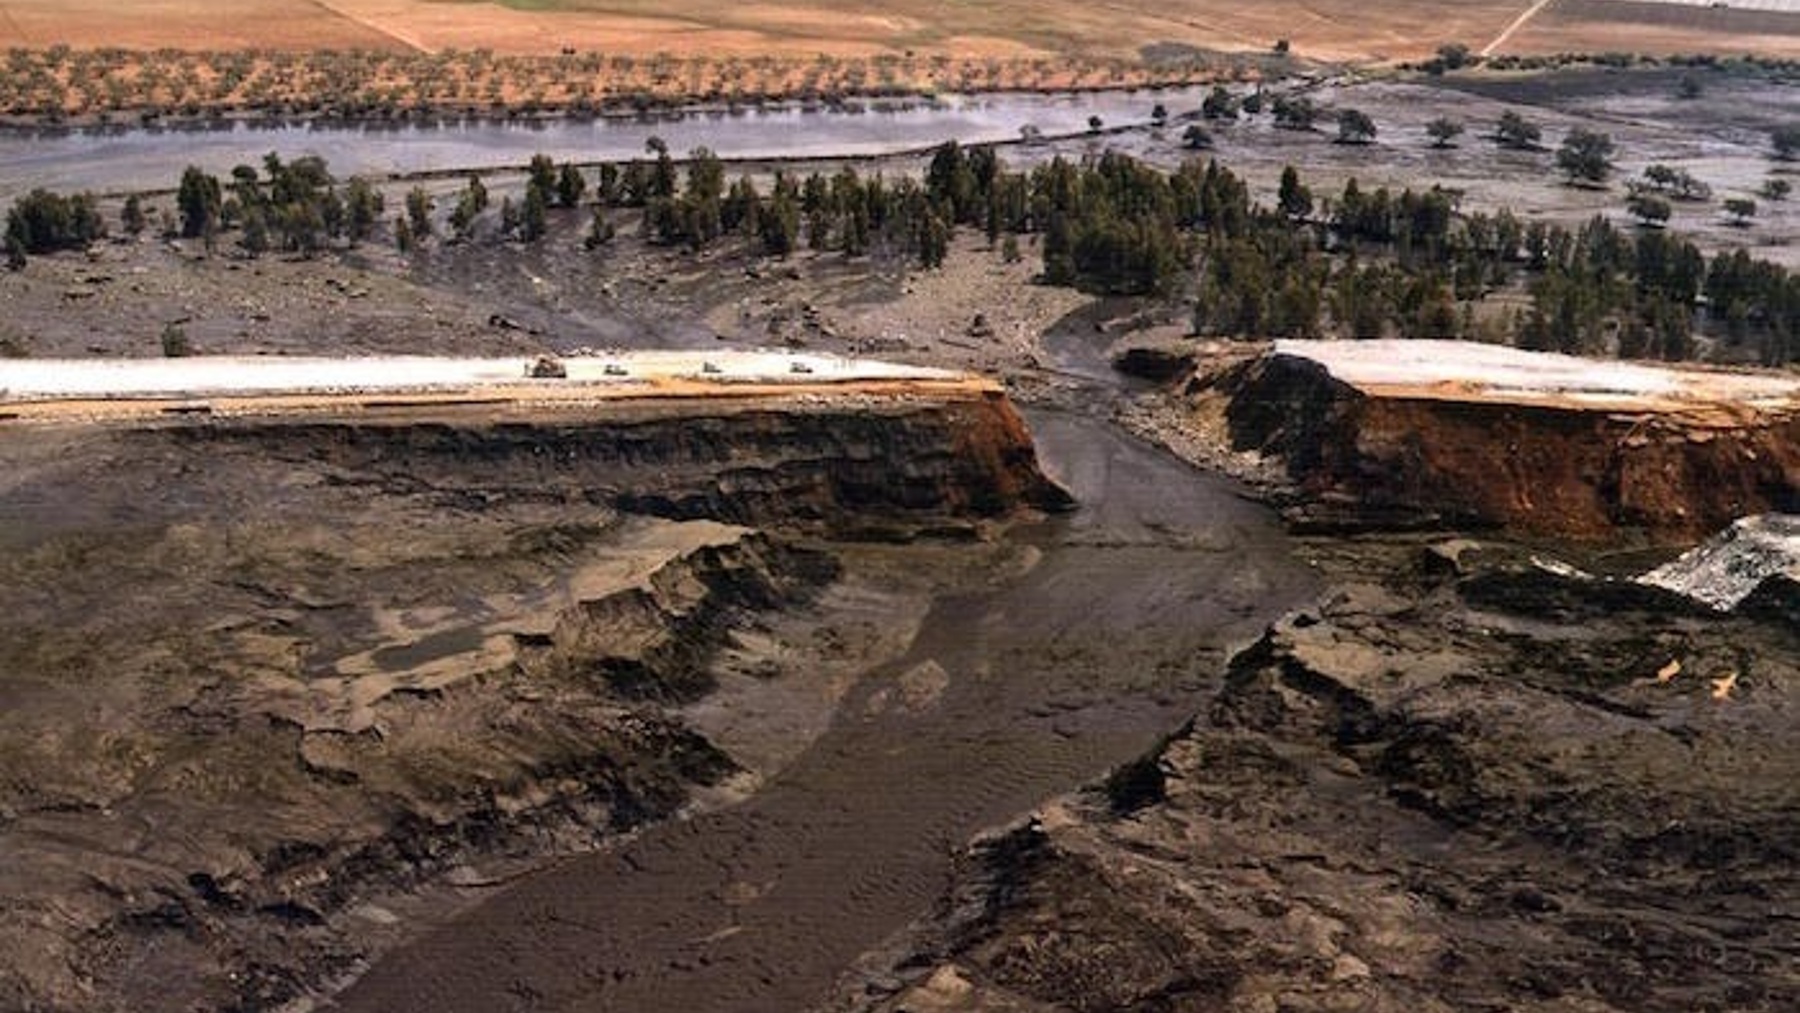 Balsa rota con lodos tóxicos de la mina de Bolidén anegando la cuenca del Guadiamar, en abril de 1998 (CSIC).